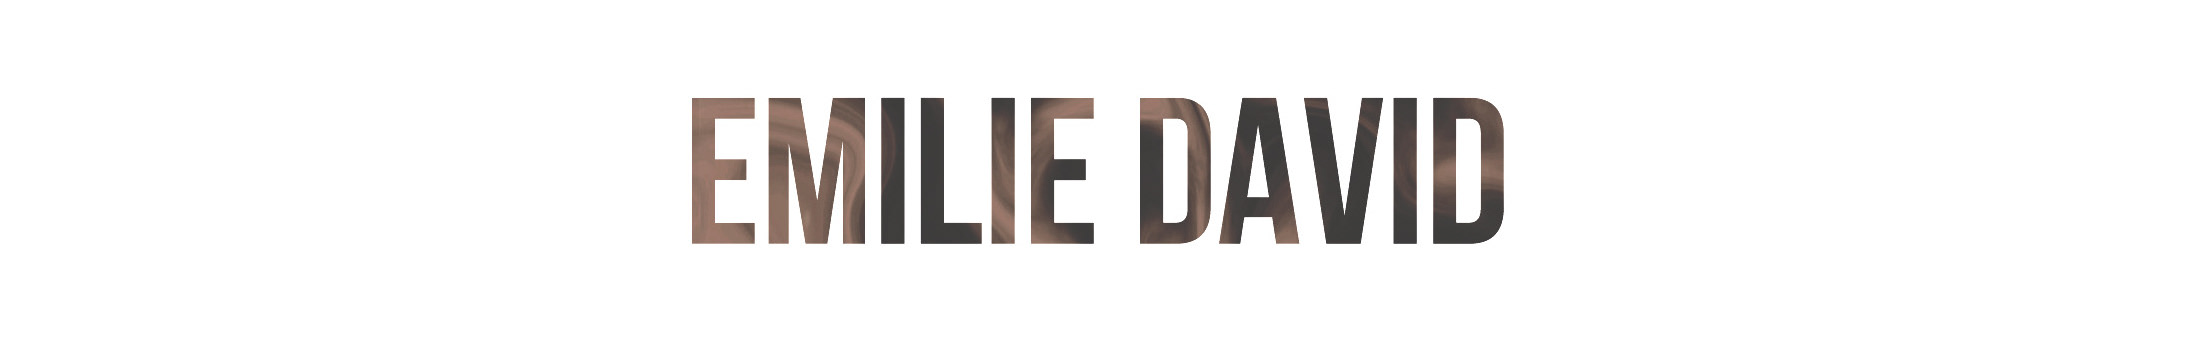 Emilie David's profile banner